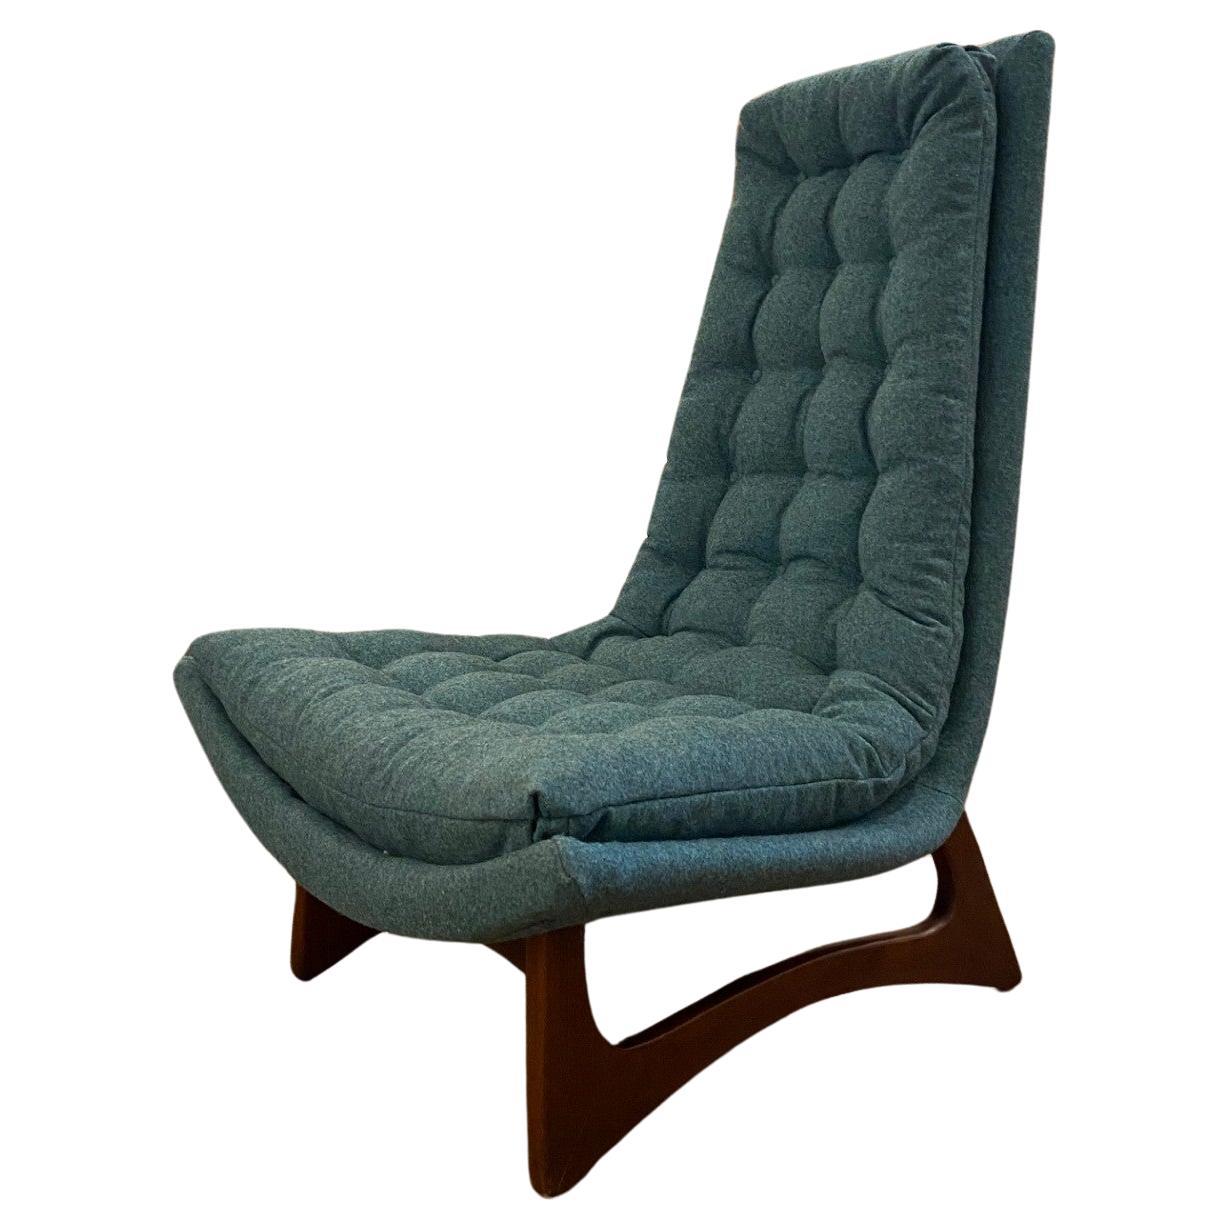 MC Gondola Club/ Lounge Chair, Attrib. Adrian Pearsall for Craft Associates 1960